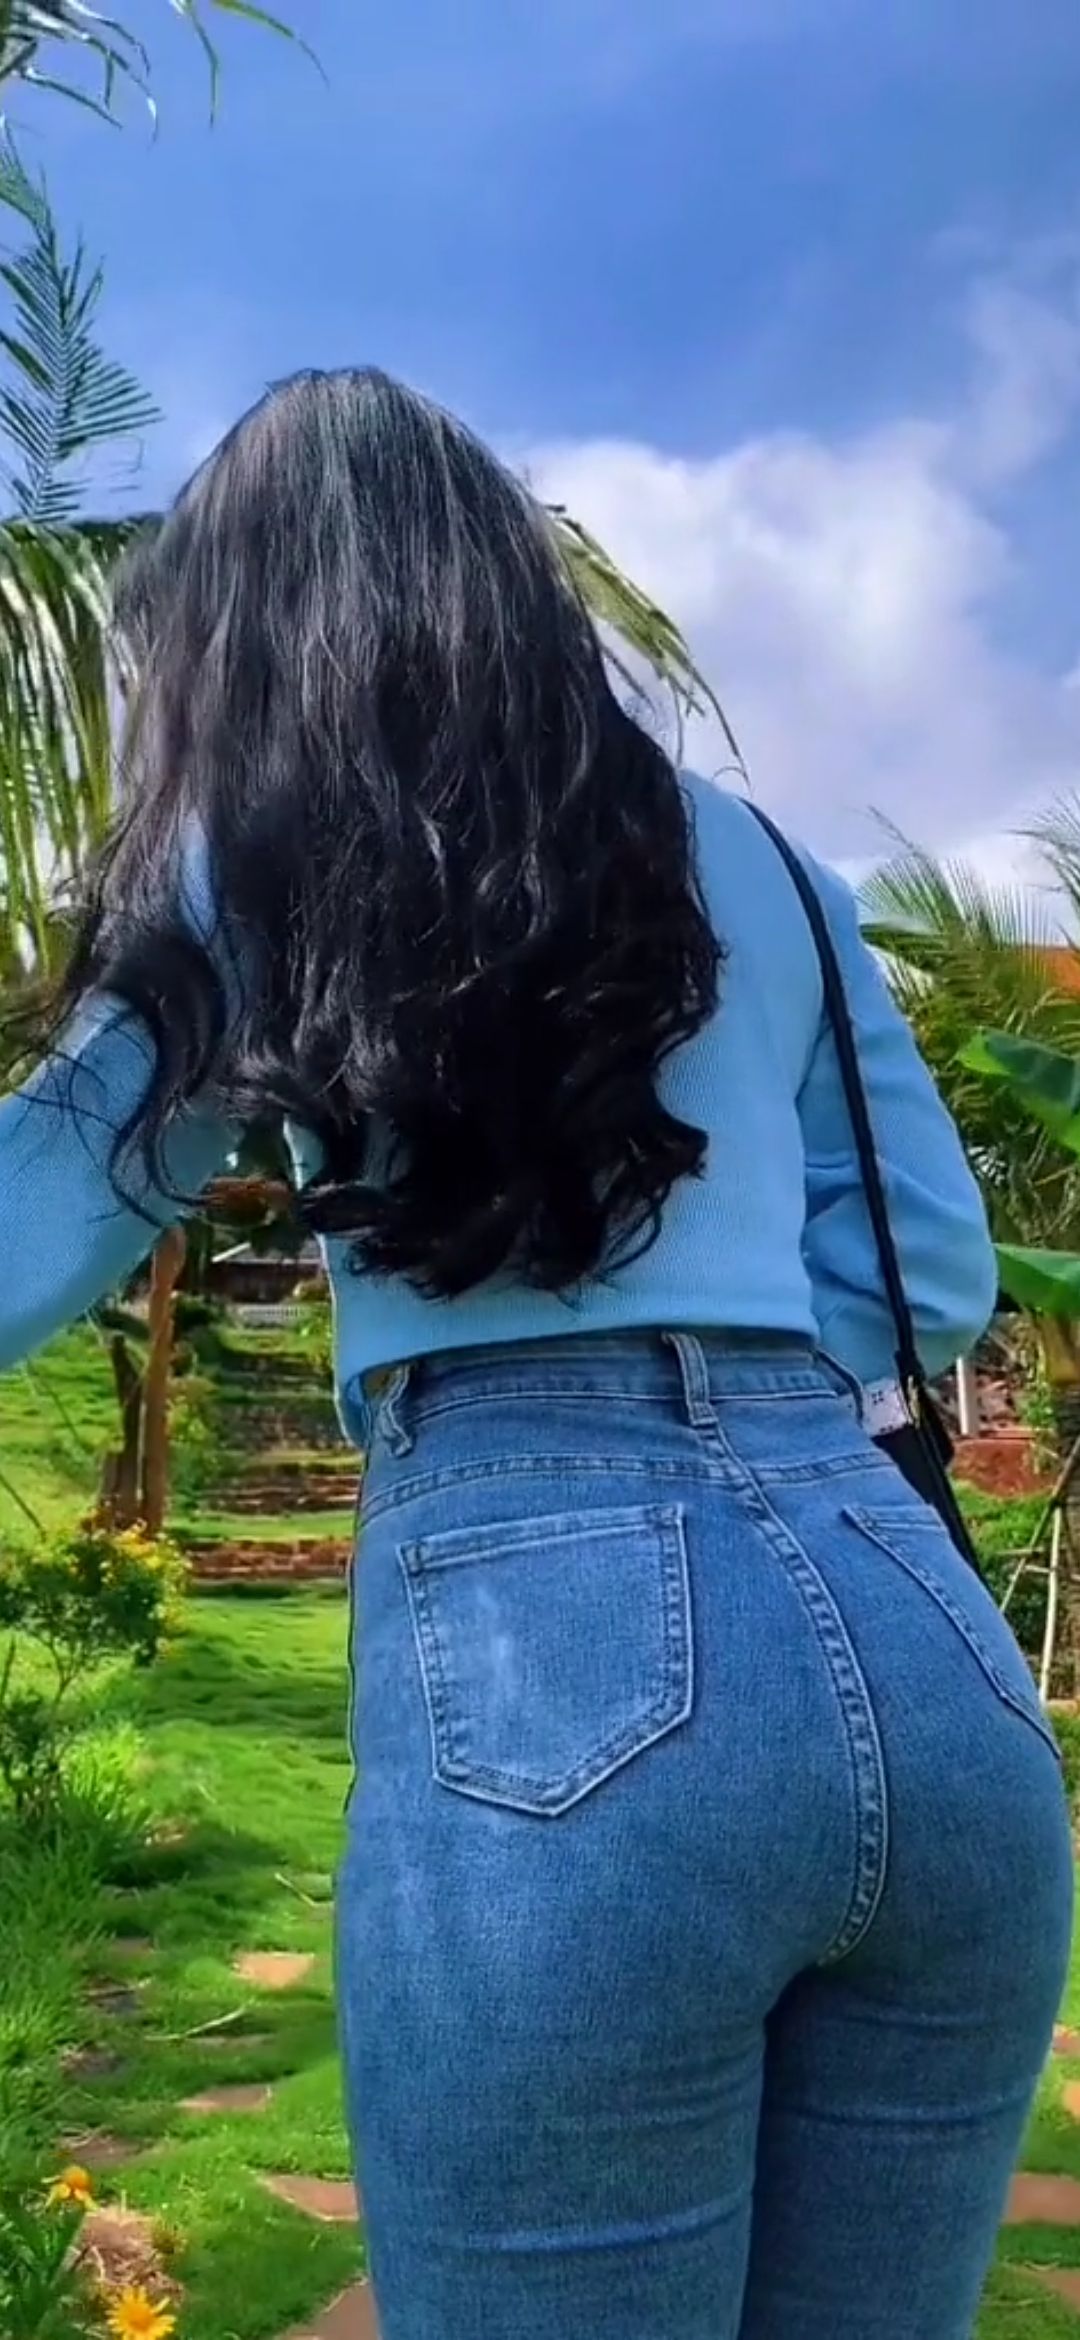 牛仔裤美女[视频]热带雨林里抓住一只肥美的牛仔裤美女牛仔裤美女